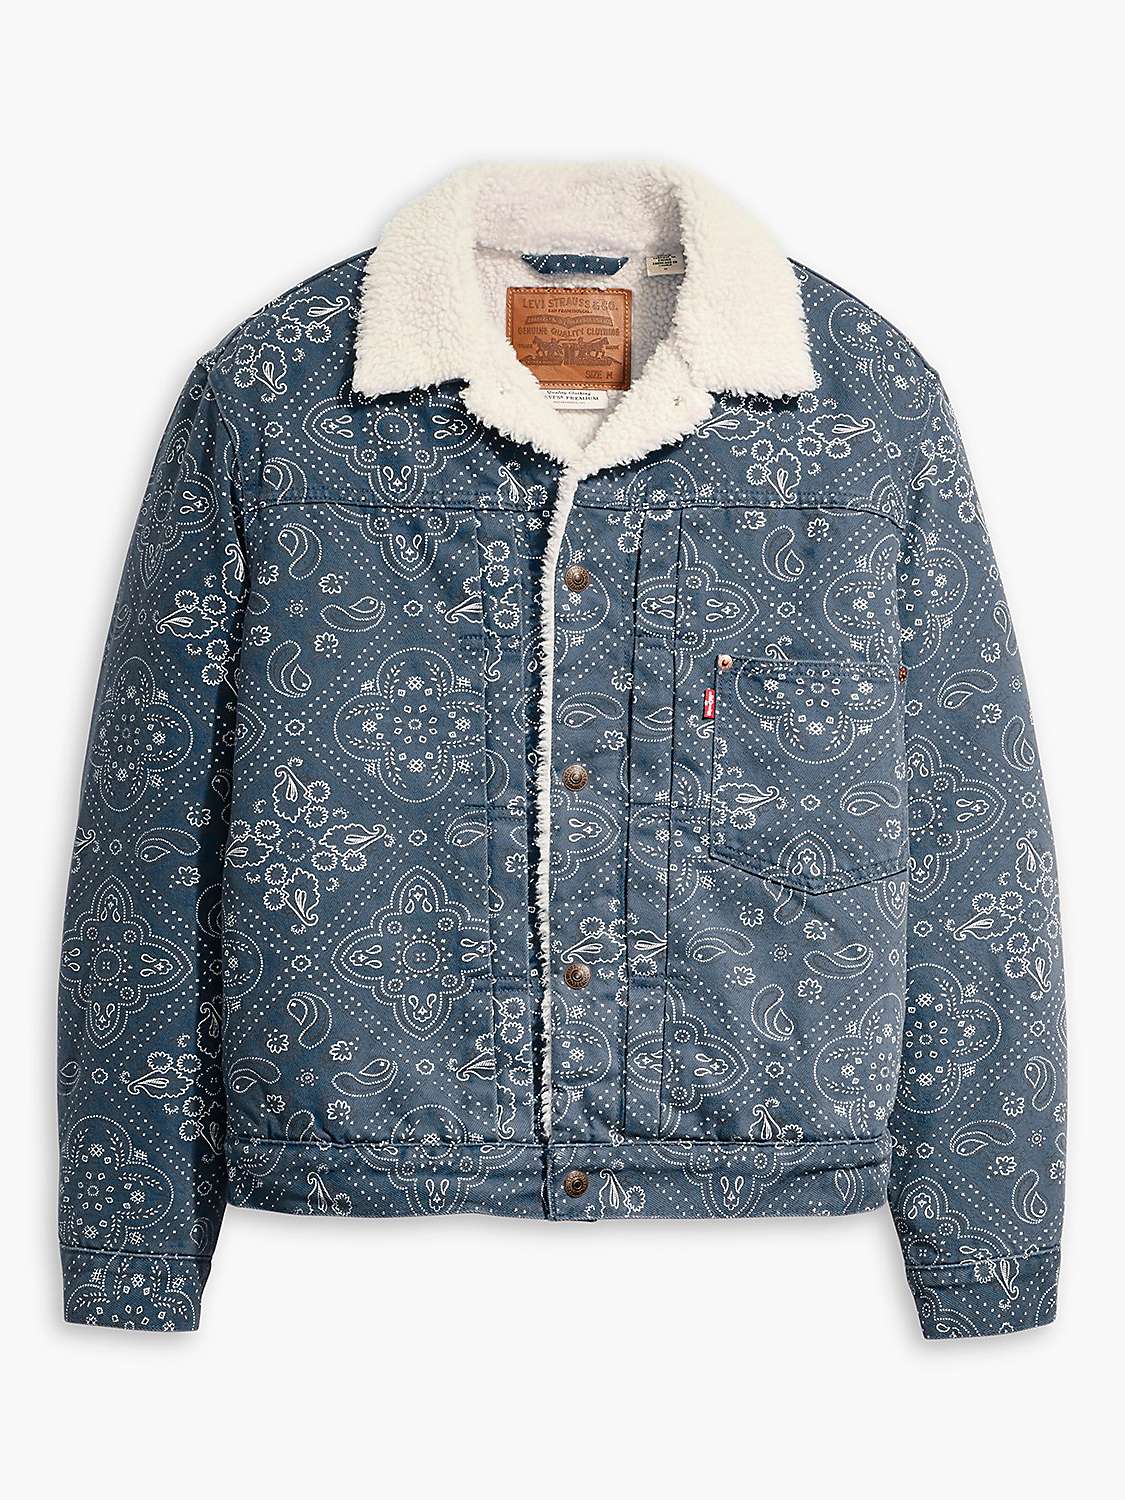 Buy Levi's Vintage Sherpa Trucker Jacket, Blue/Multi Online at johnlewis.com